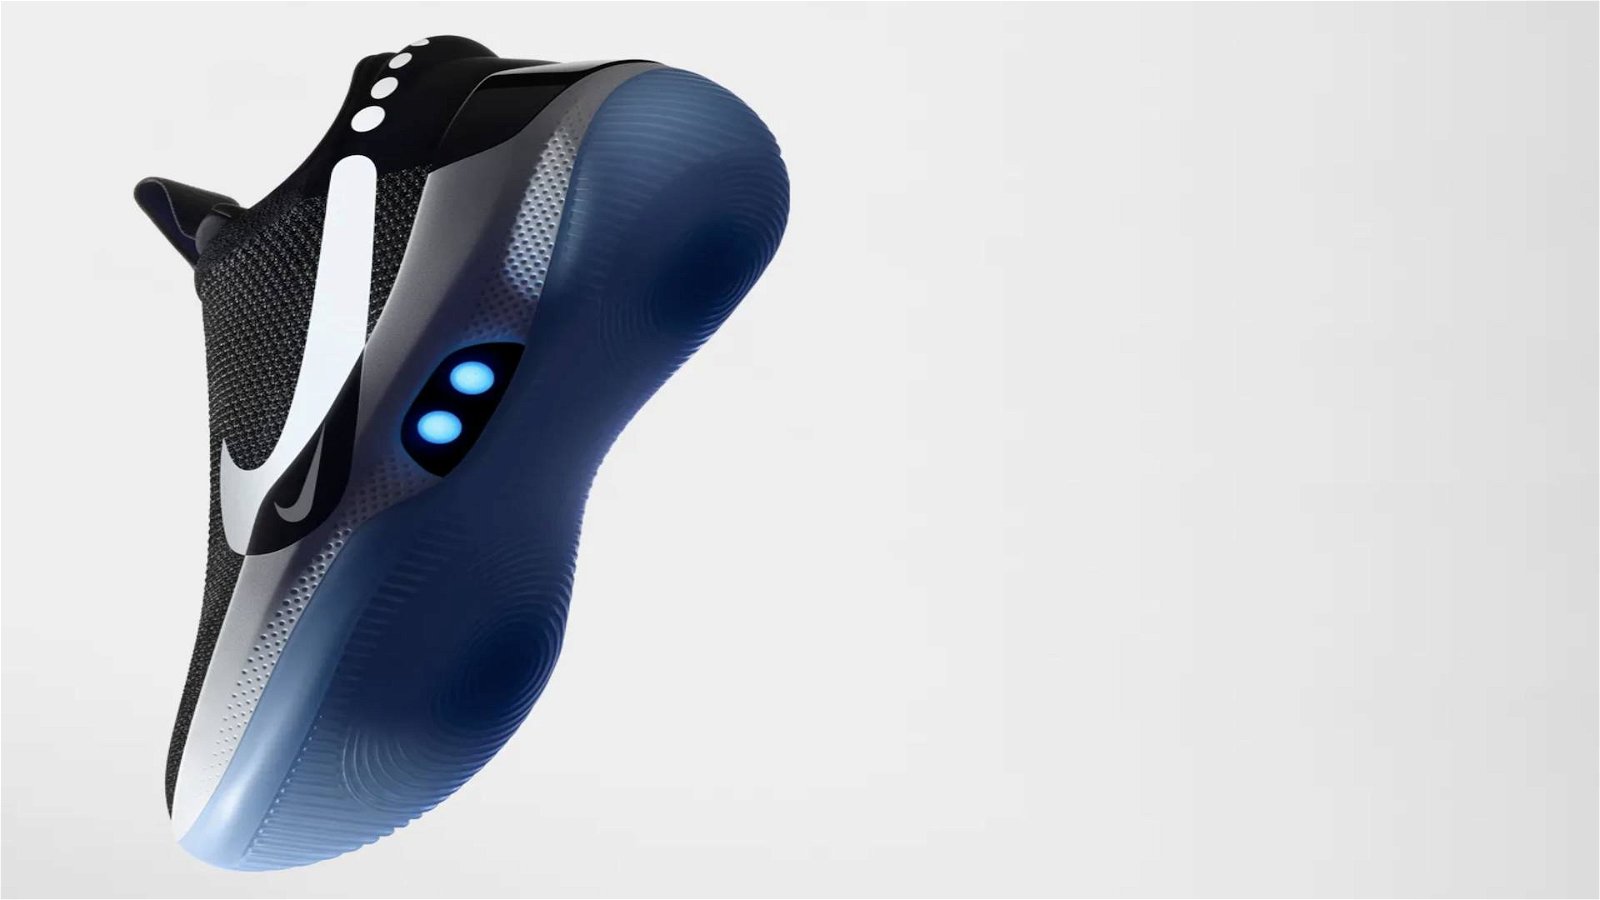 Immagine di Nike Adapt BB, le prime scarpe da basket auto-allaccianti con personalizzazione della vestibilità anche via app